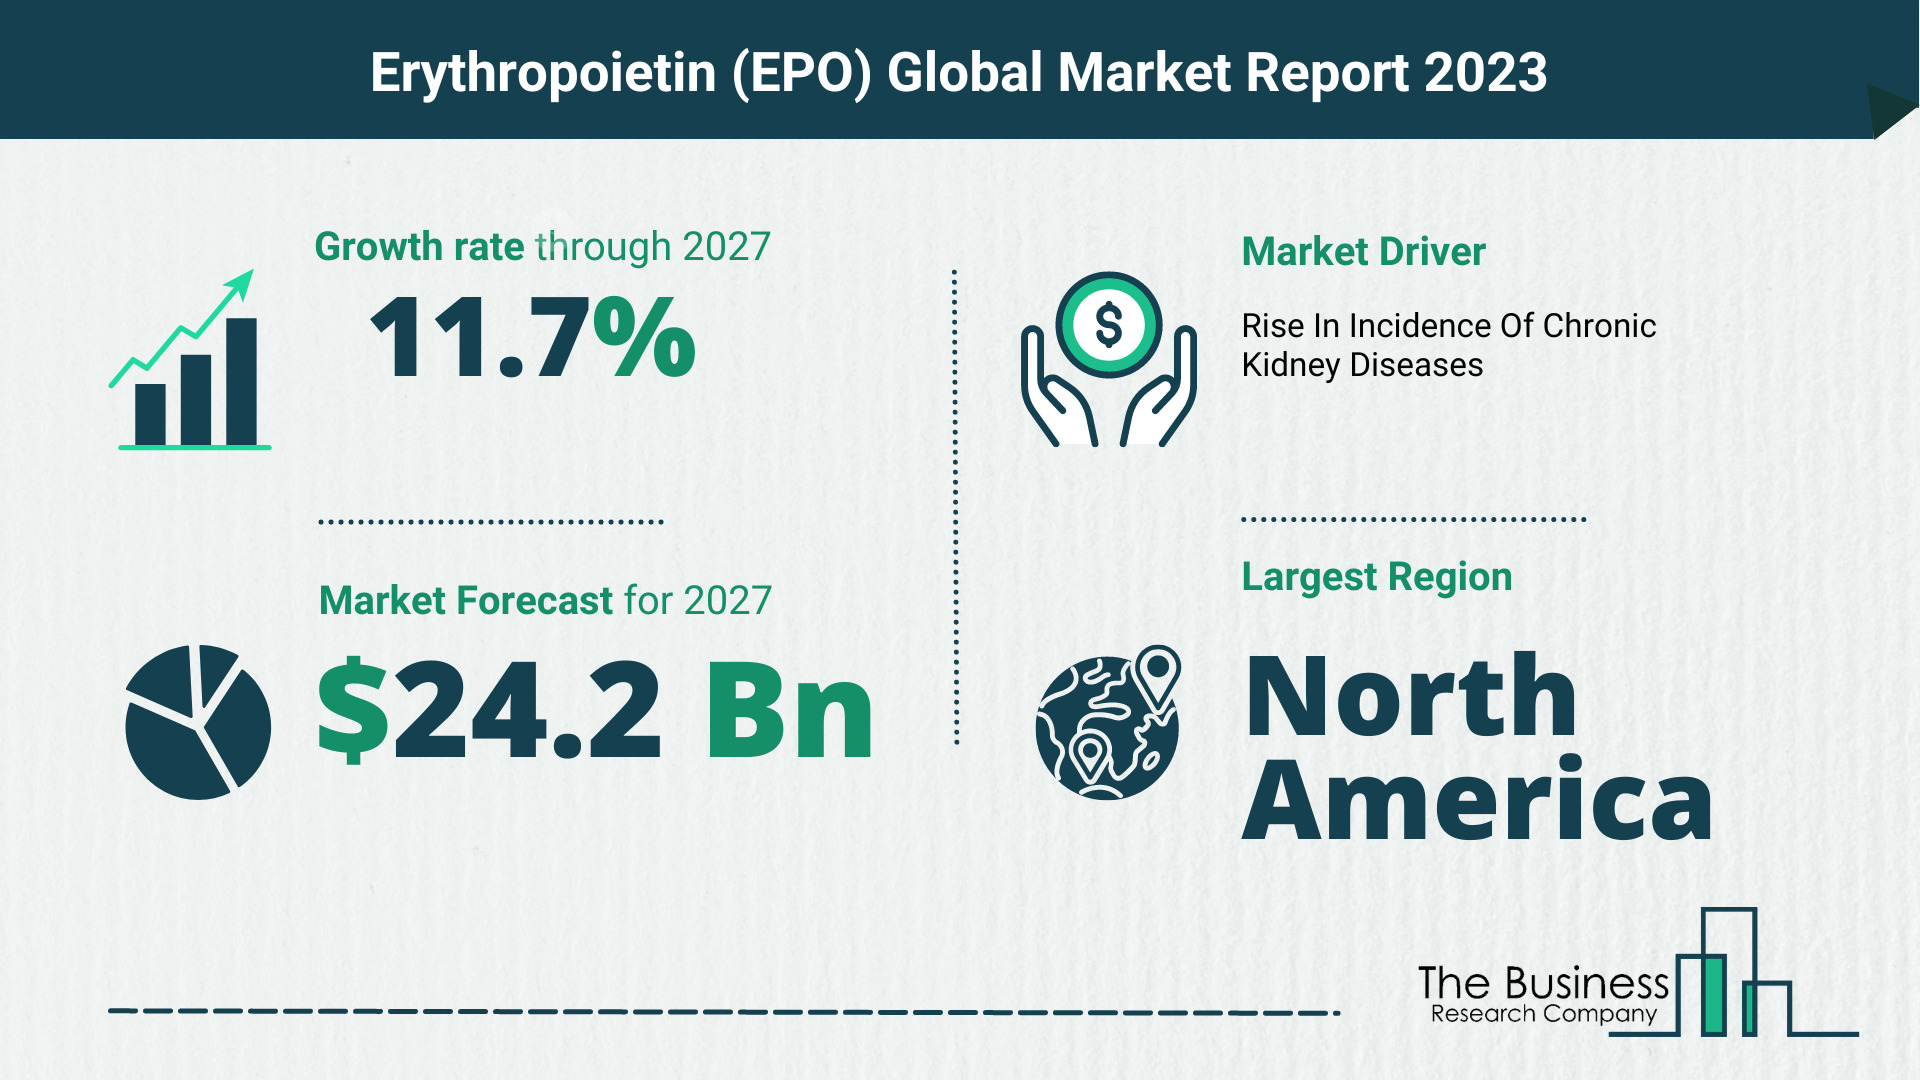 Global Erythropoietin (EPO) Market Size